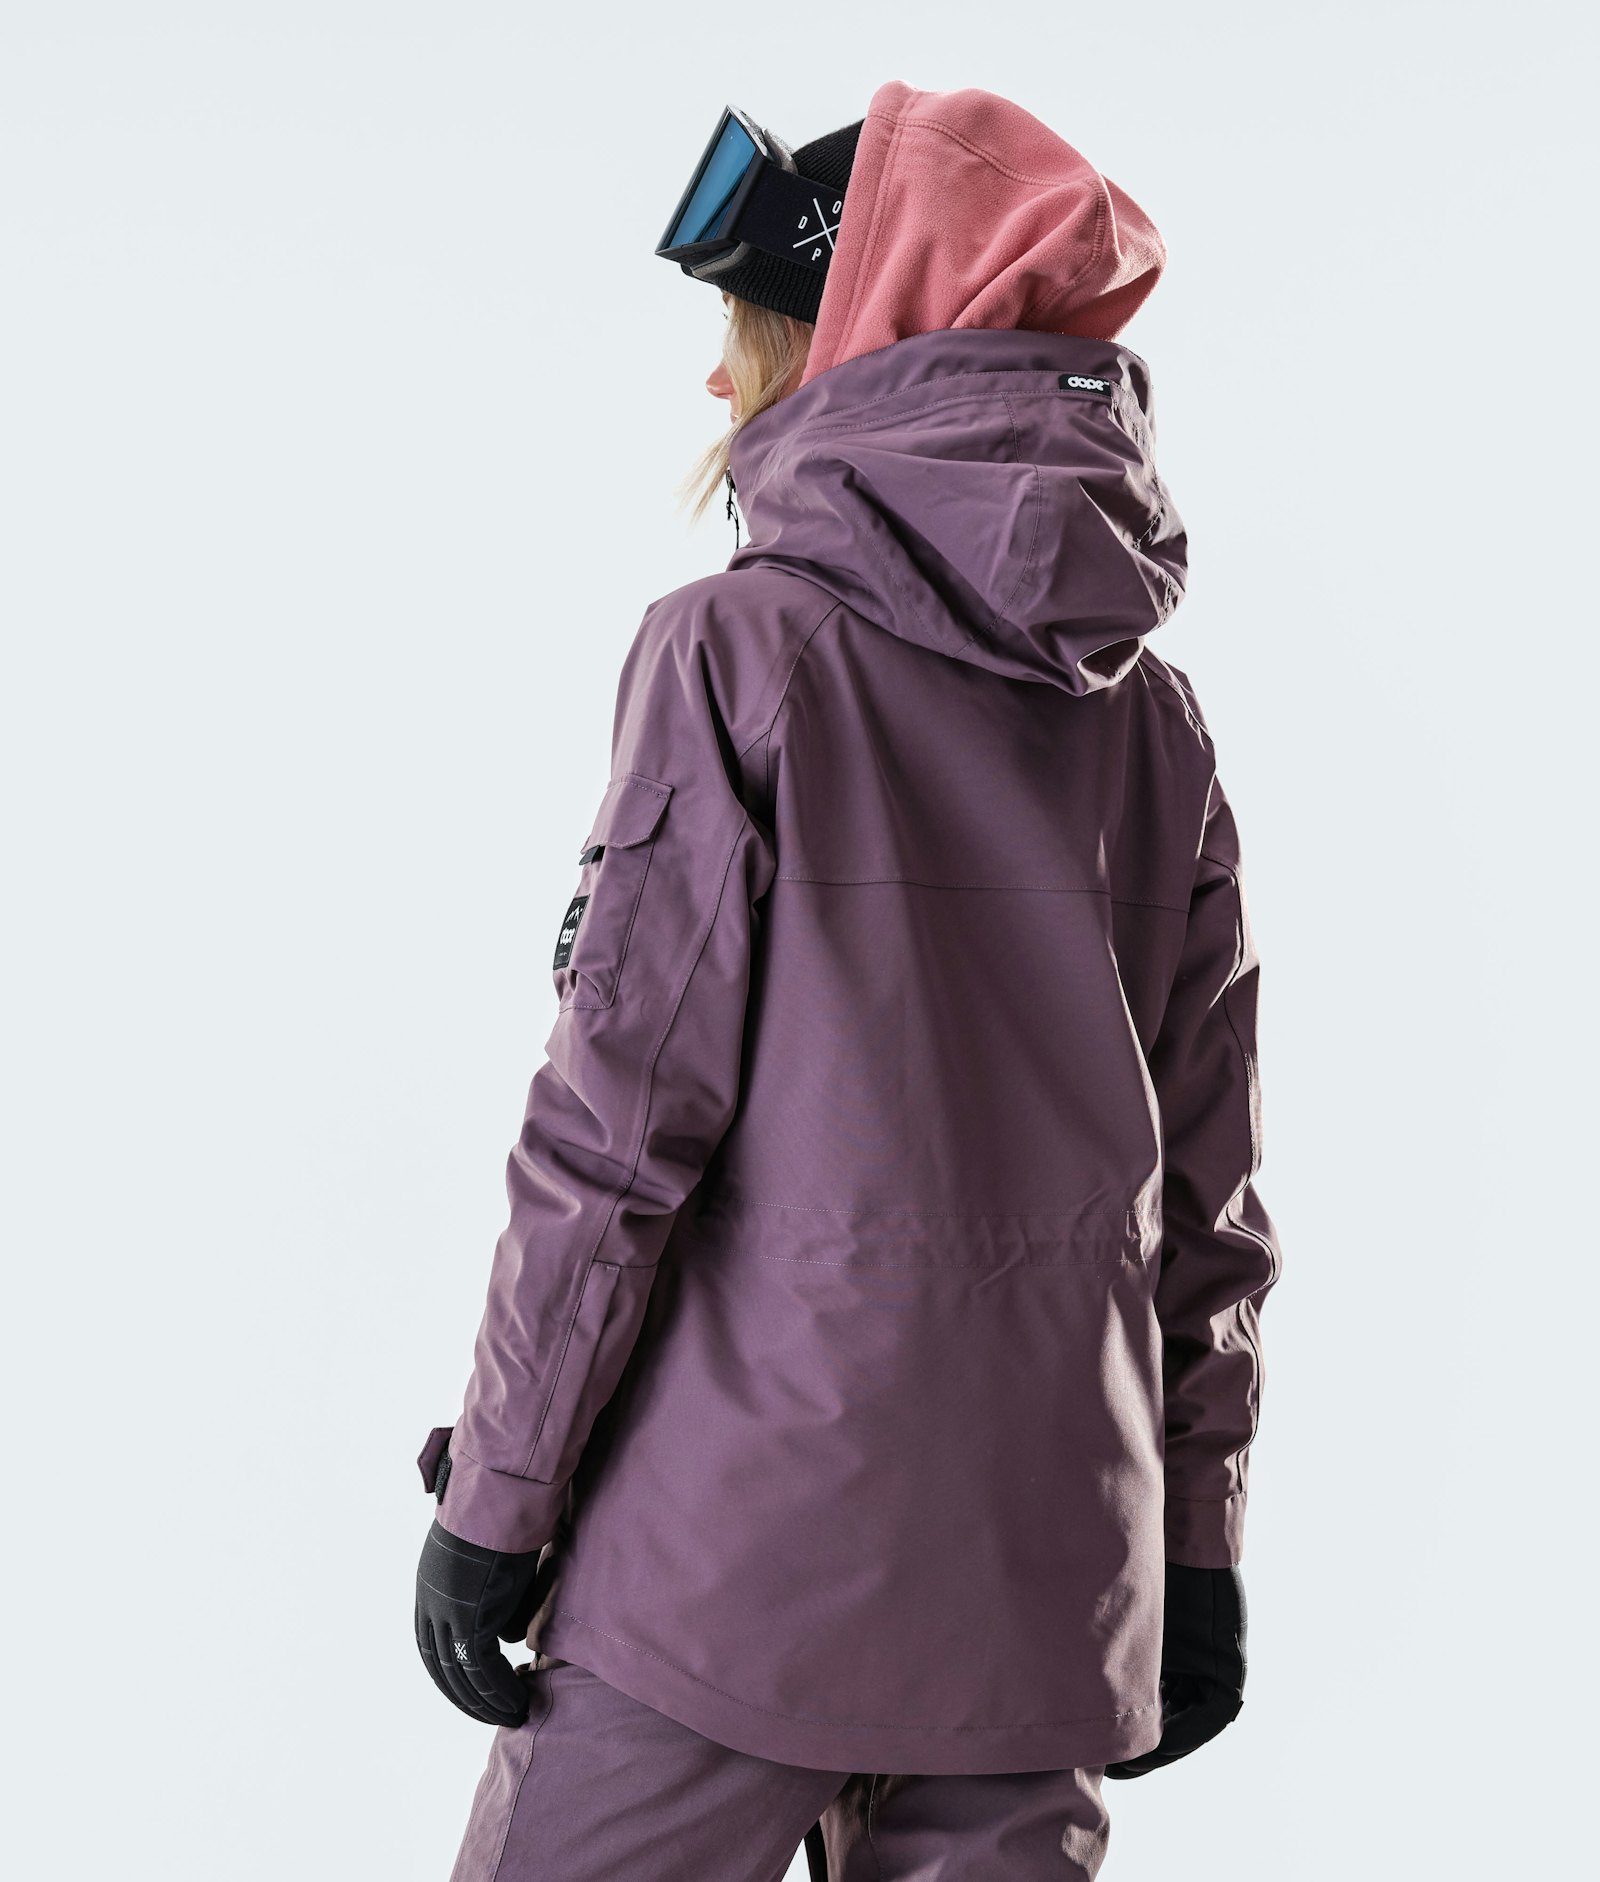 Akin W 2020 Veste Snowboard Femme Faded Grape